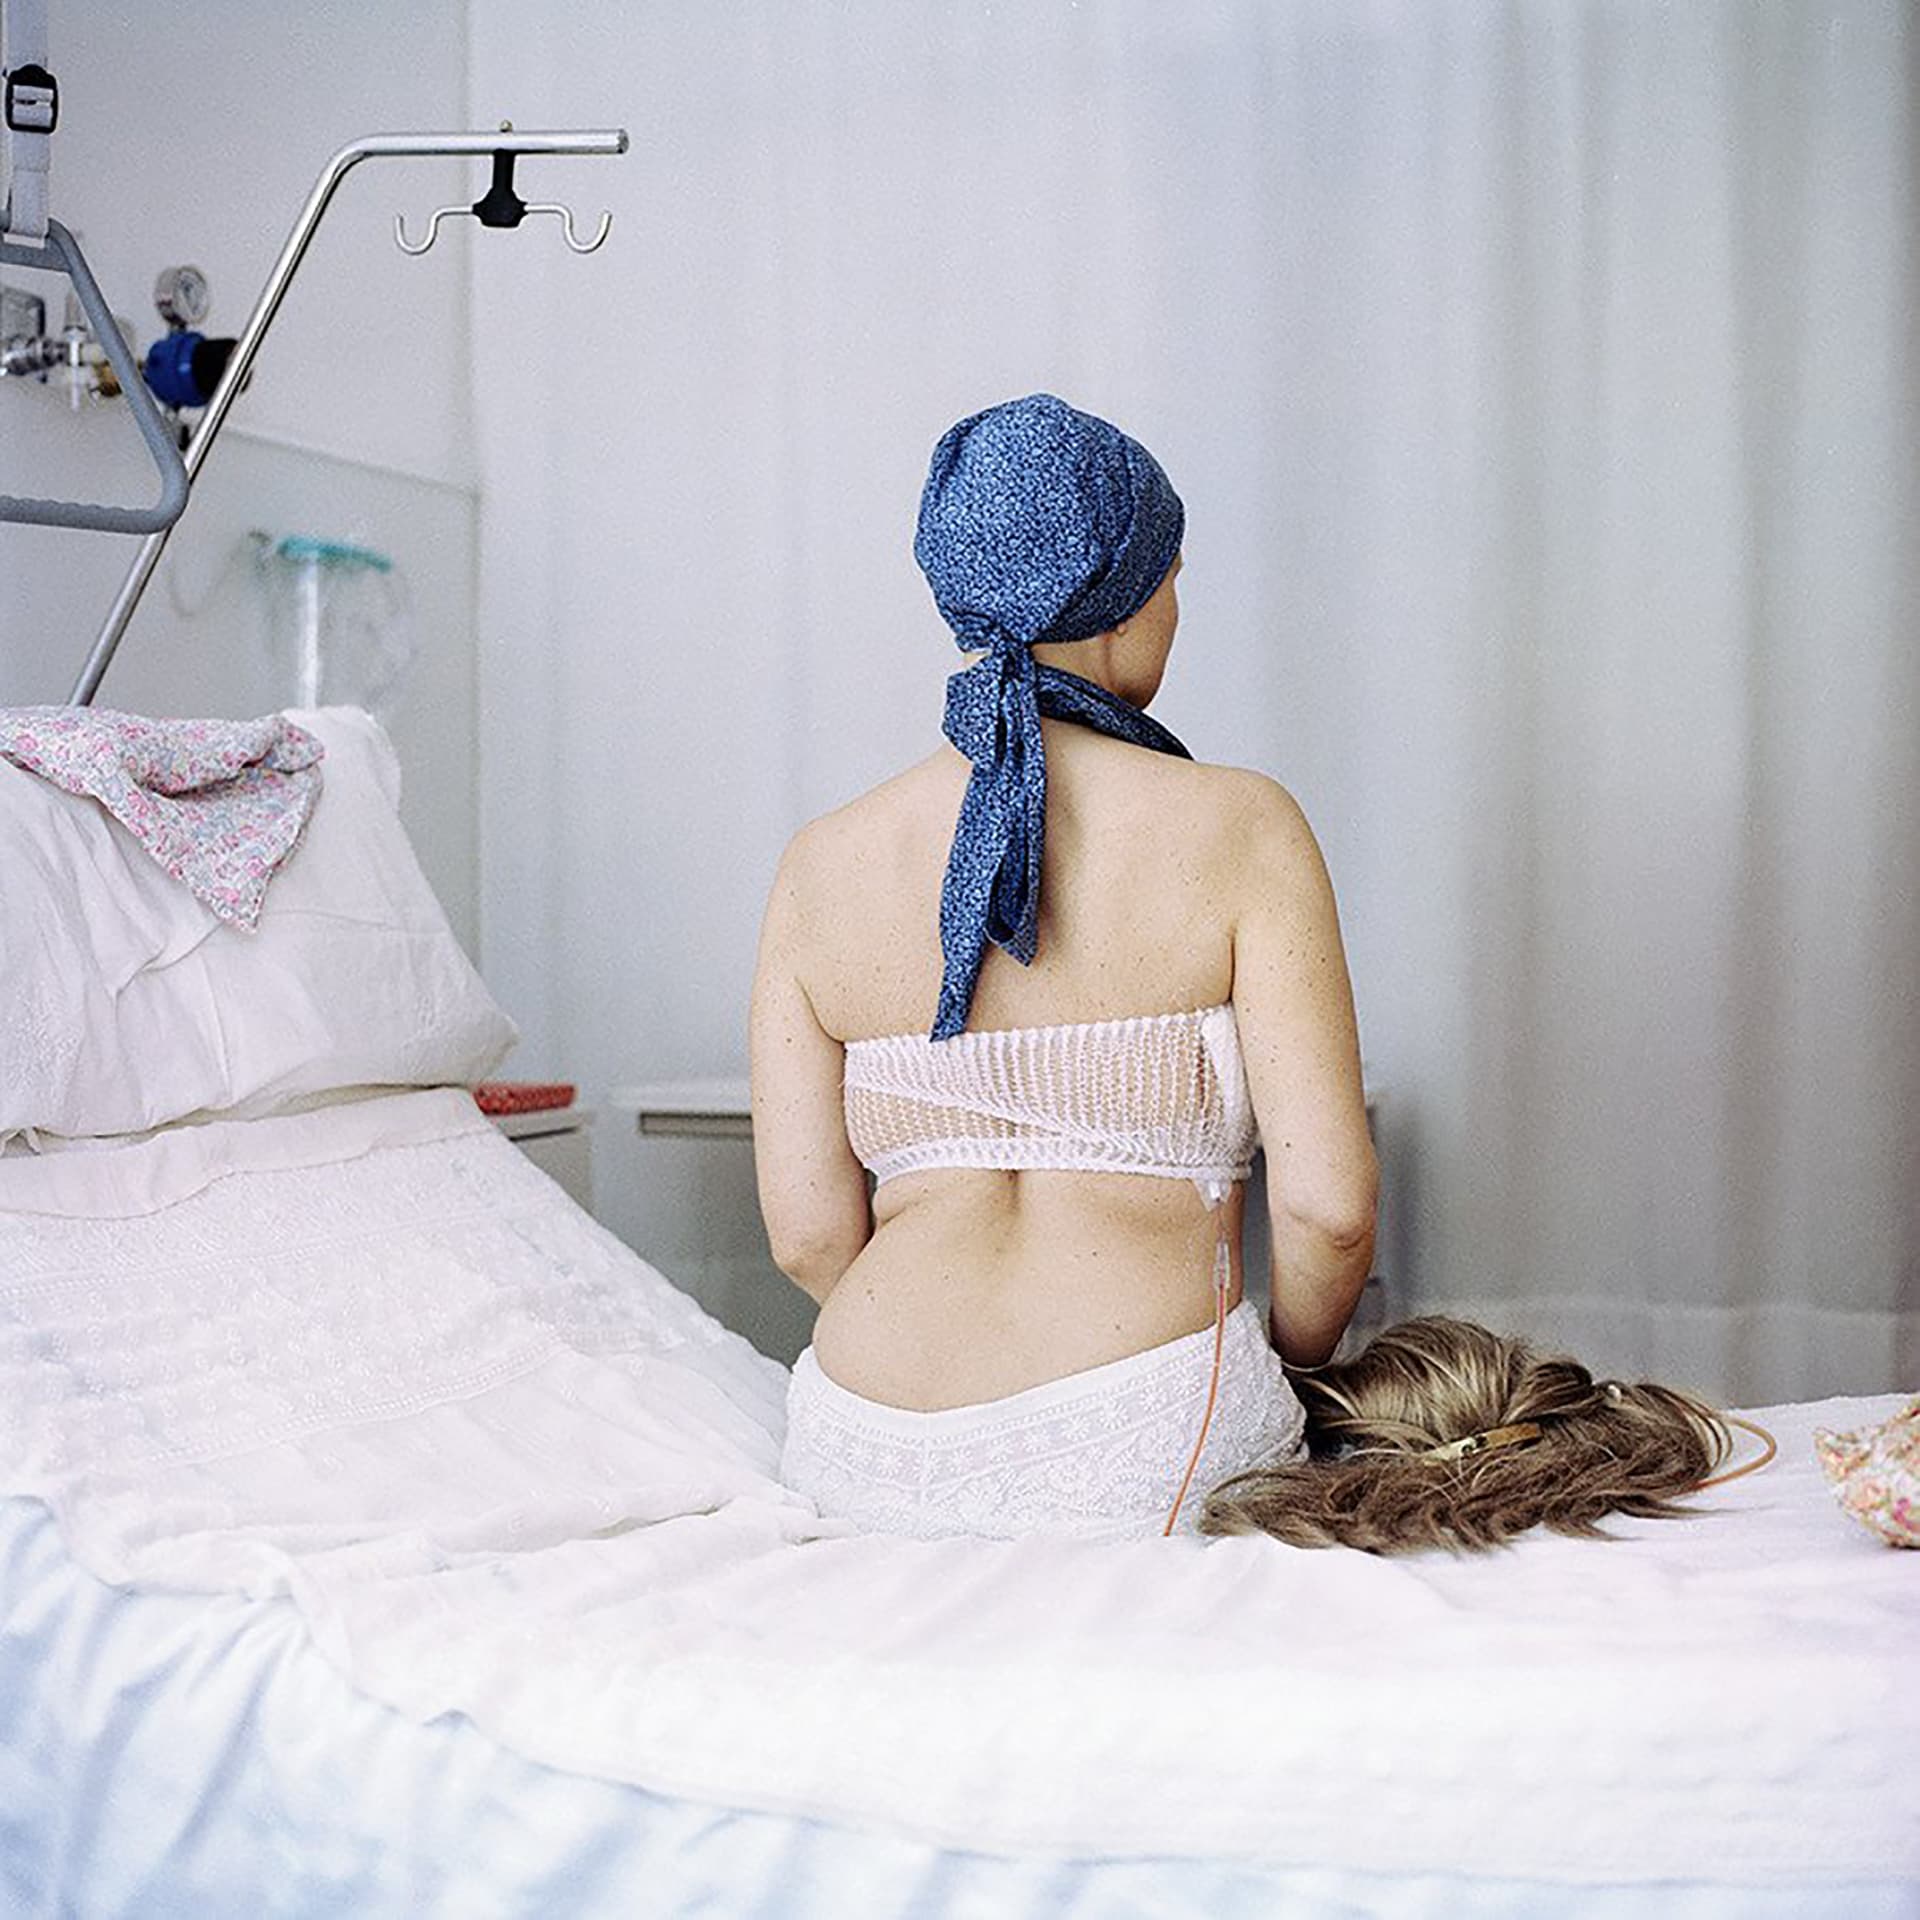 صور مؤثرة تكشف كيف يمس المرض والرعاية الصحية العديد من جوانب الحياة